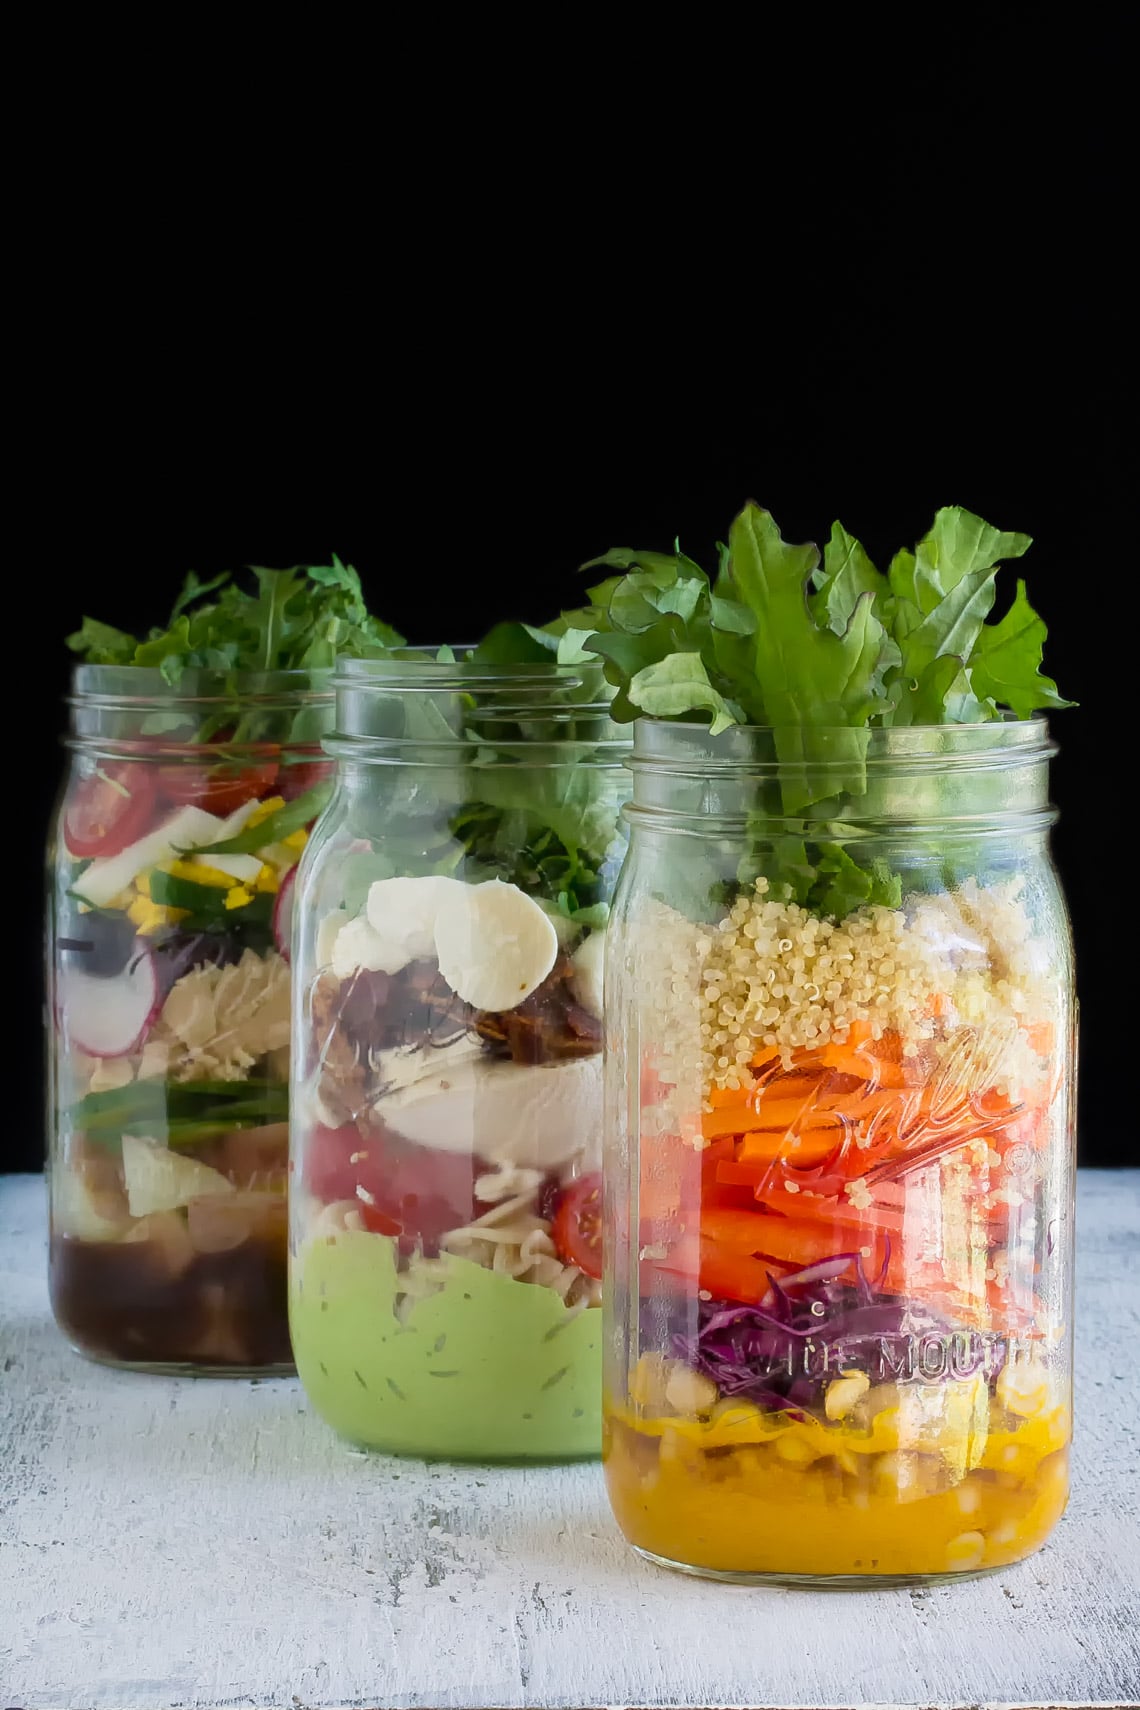 Low FODMAP Mason jar Salads in jars, vertical image, against black background